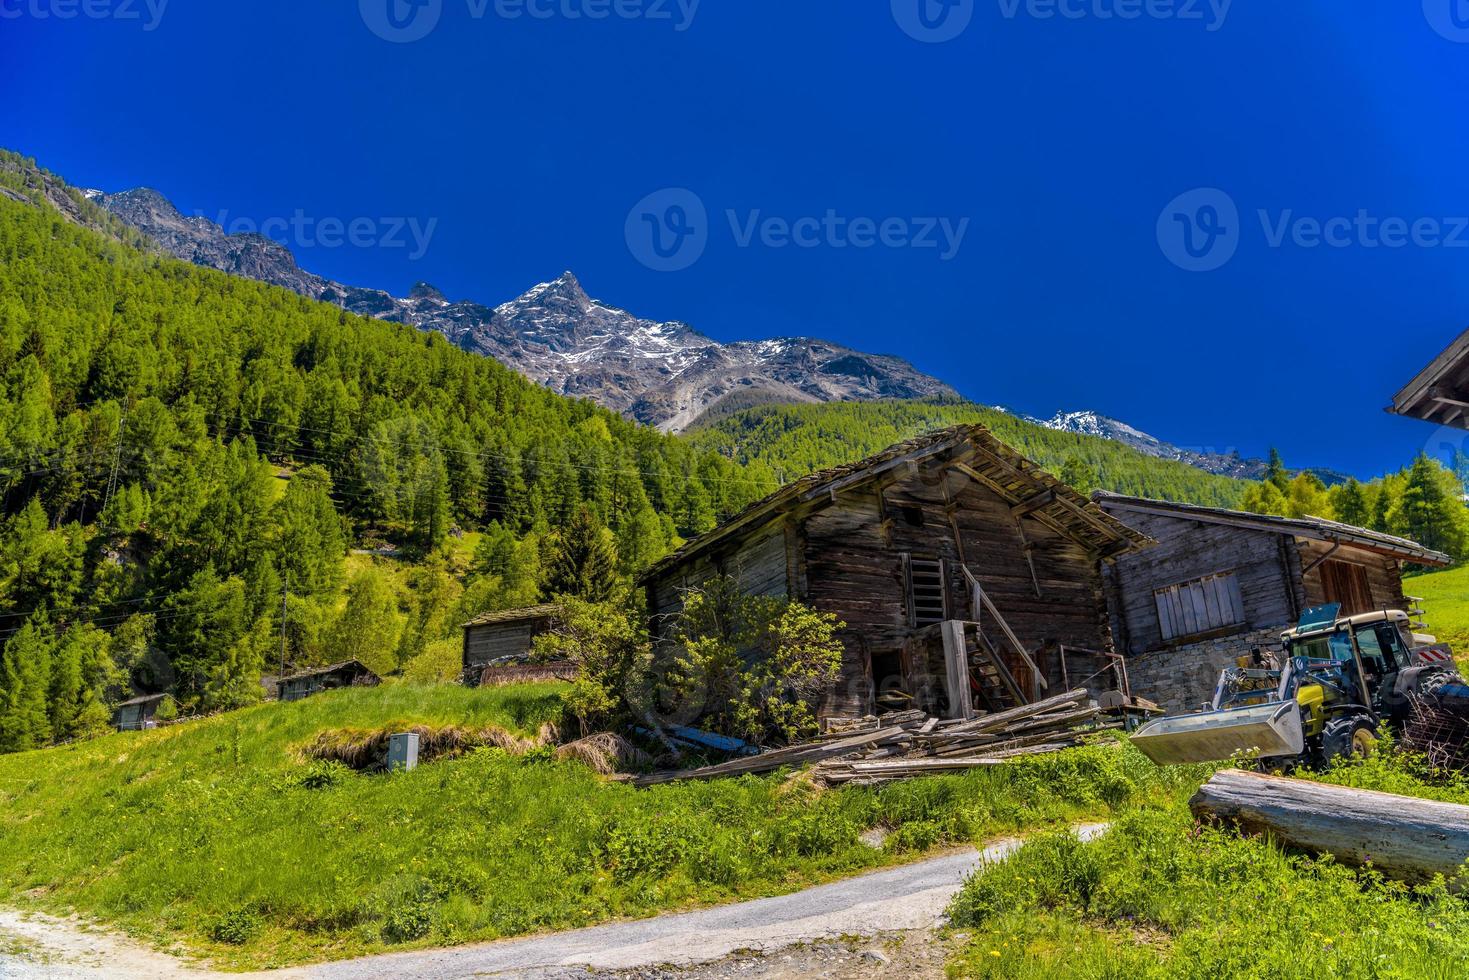 casa abandonada y tractor en alpes suizos, randa, visp, wallis, foto